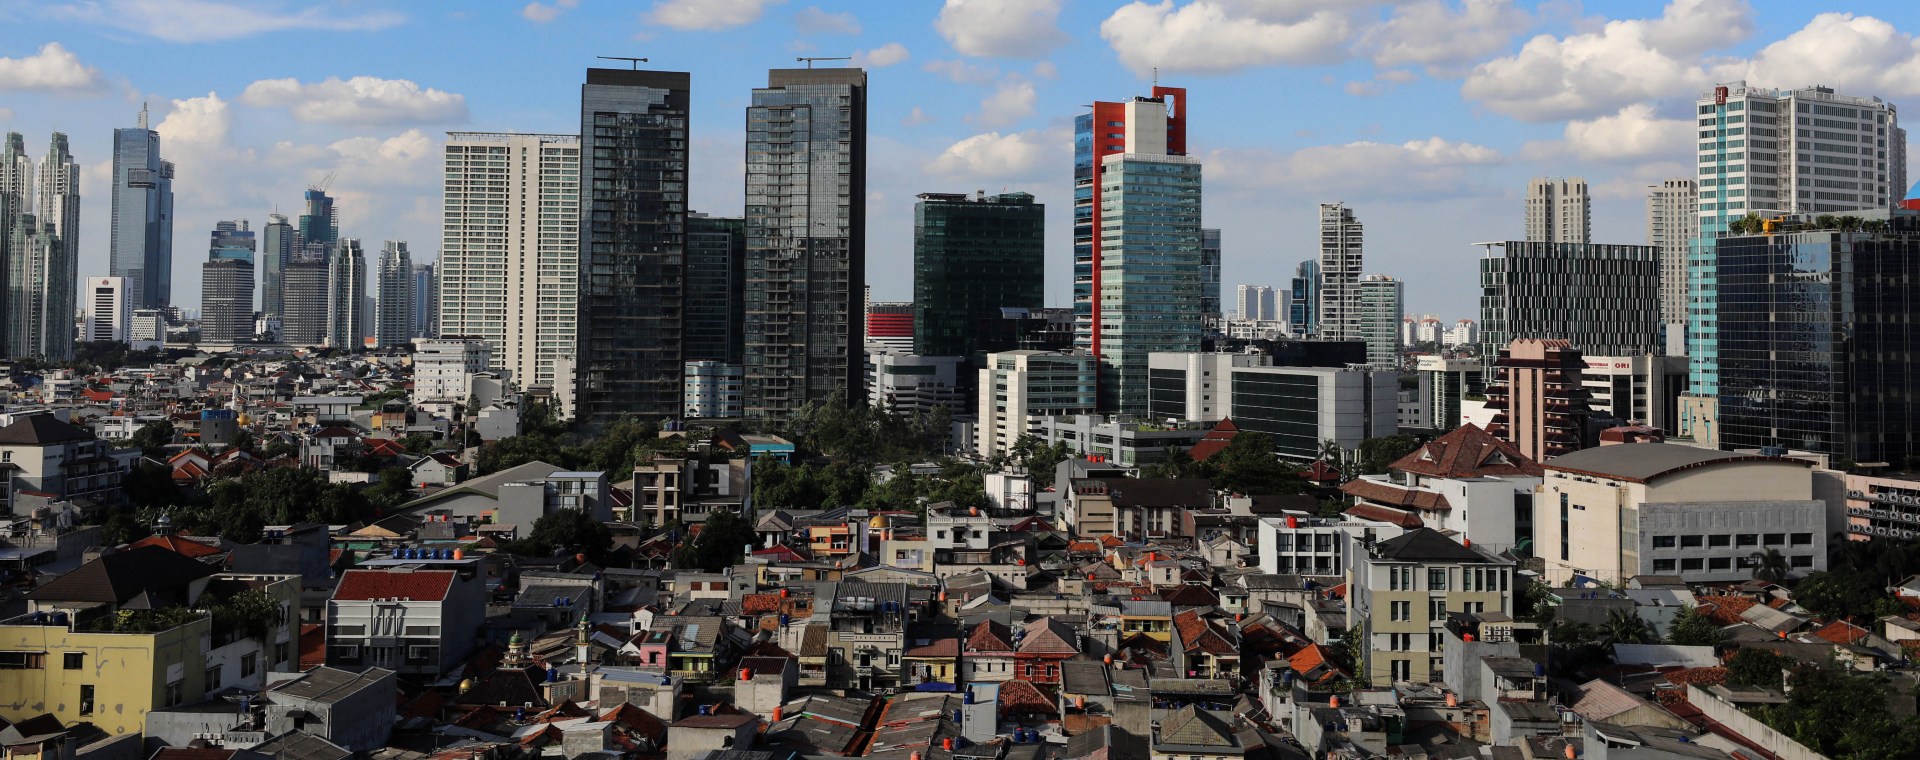 Deretan gedung bertingkat dan permukiman padat penduduk di Jakarta. JIBI/Bisnis-Eusebio Chrysnamurti